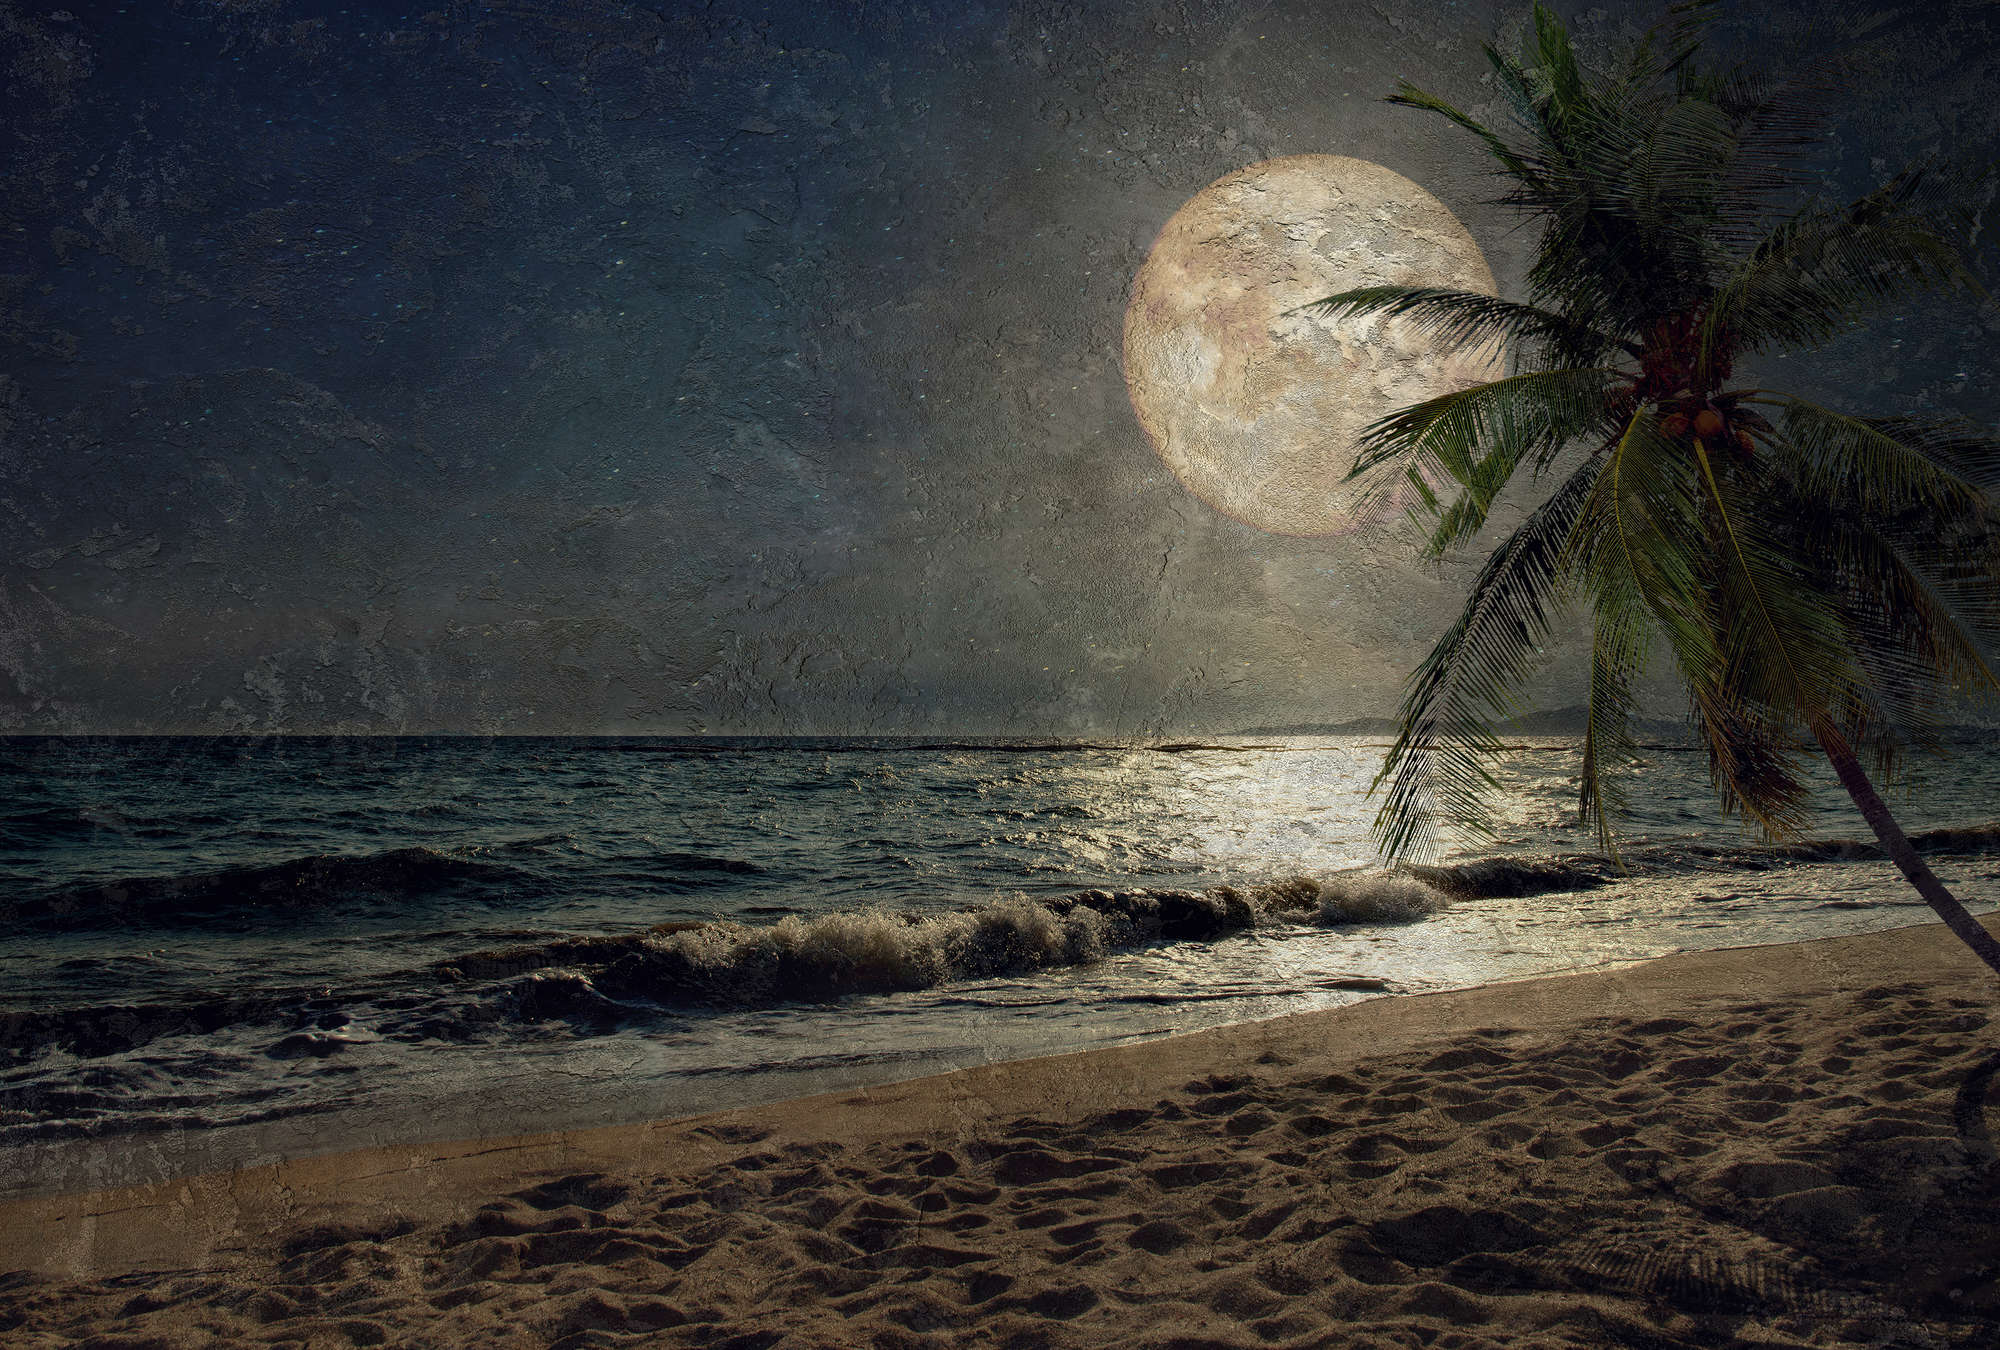             Carta da parati in stile artistico "Spiaggia, vista mare e luna" - Bianco, marrone, blu
        